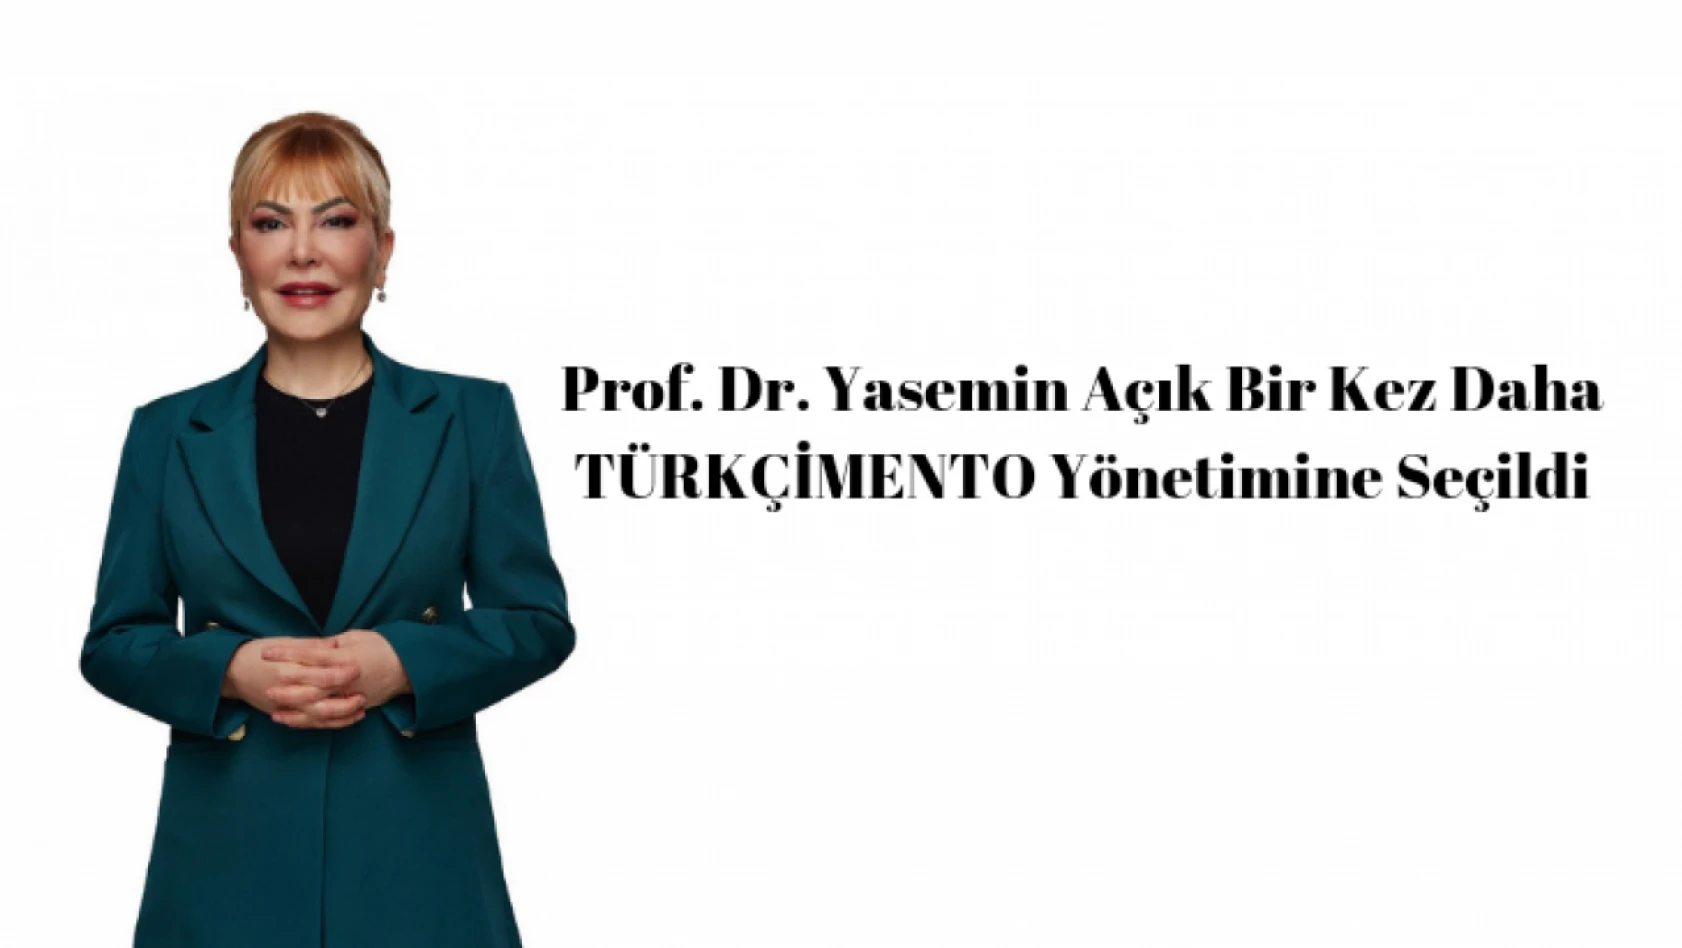 Prof. Dr. Yasemin Açık Bir Kez Daha TÜRKÇİMENTO Yönetimine Seçildi